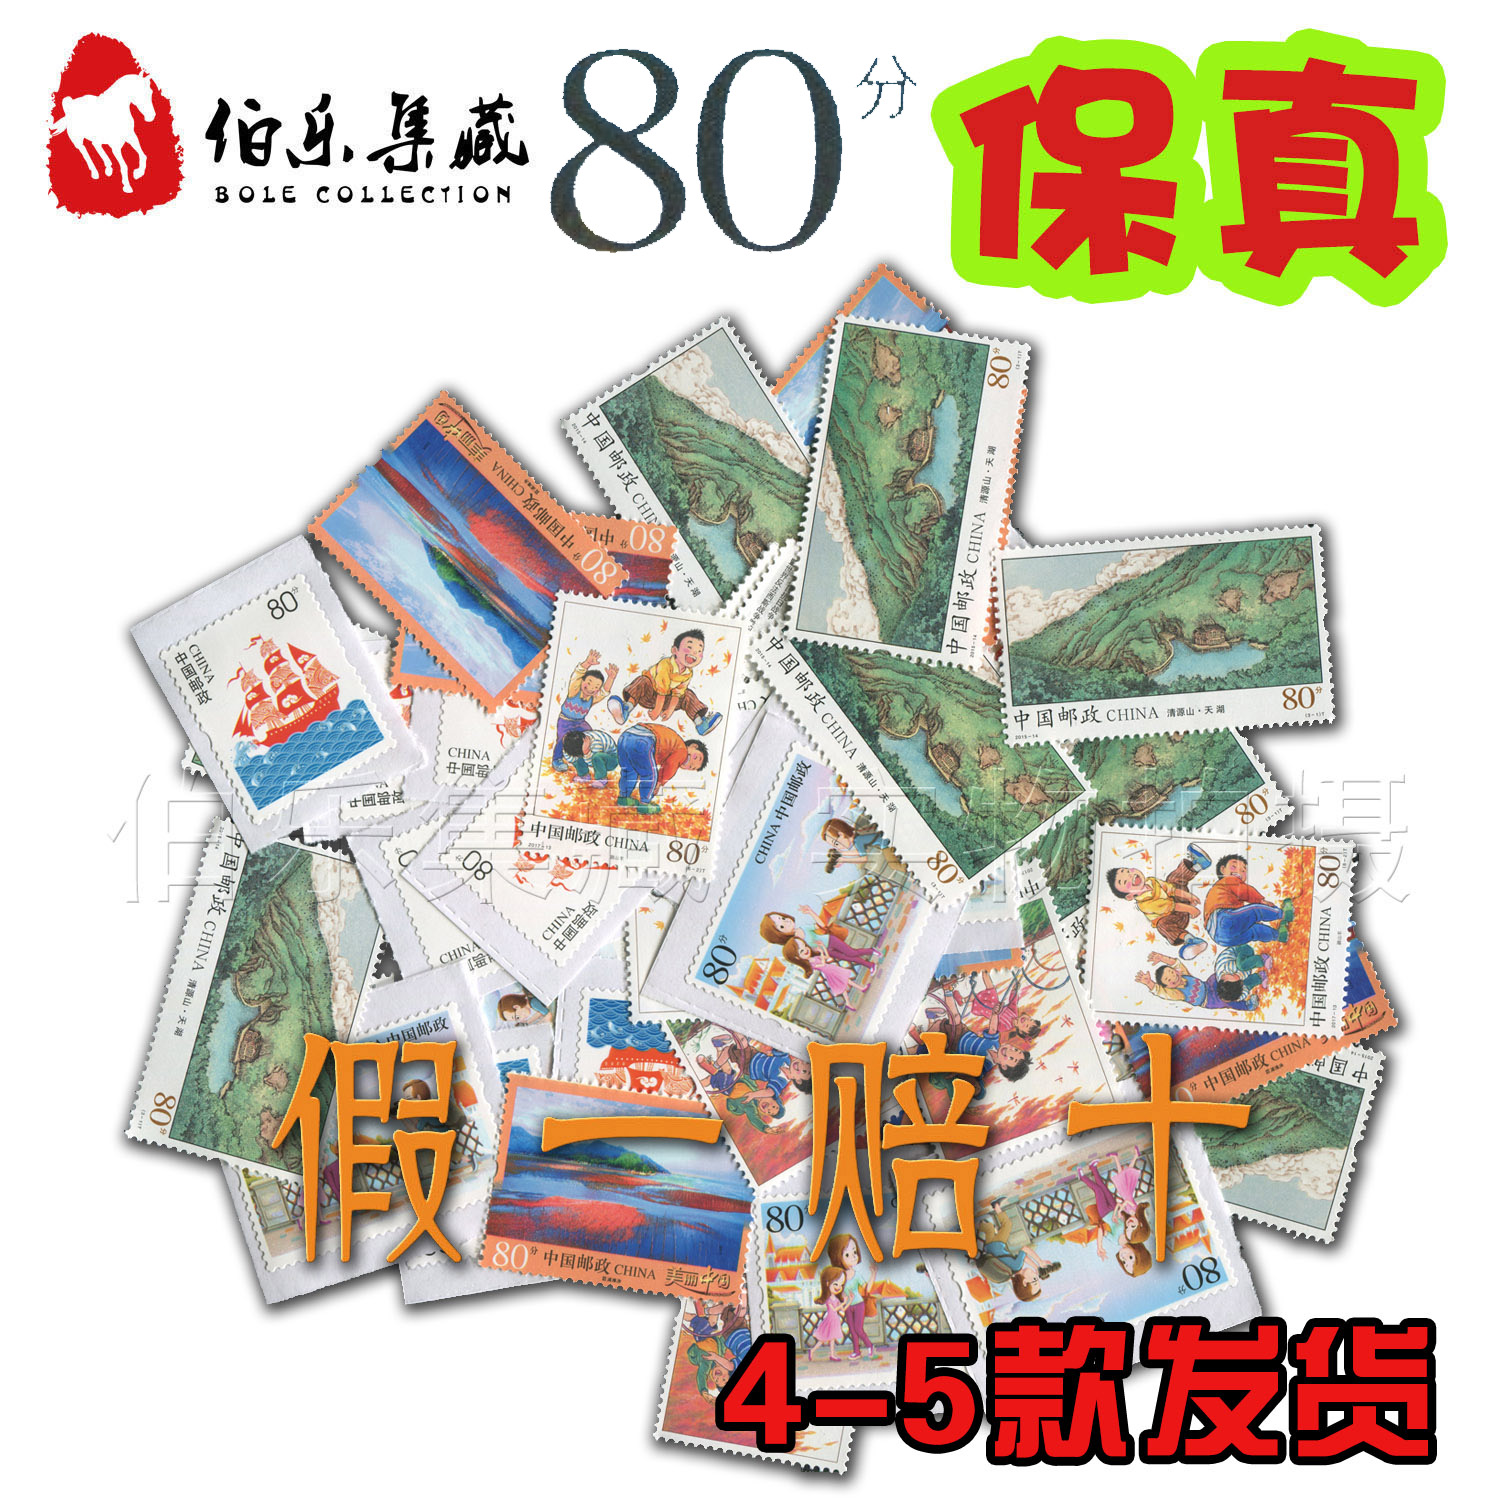 速達には、手紙を送るための 80 セント 0.8 元の割引切手、はがきを送るための切手、忠誠切手、バラ切手の 20 枚が 1 セット含まれます。